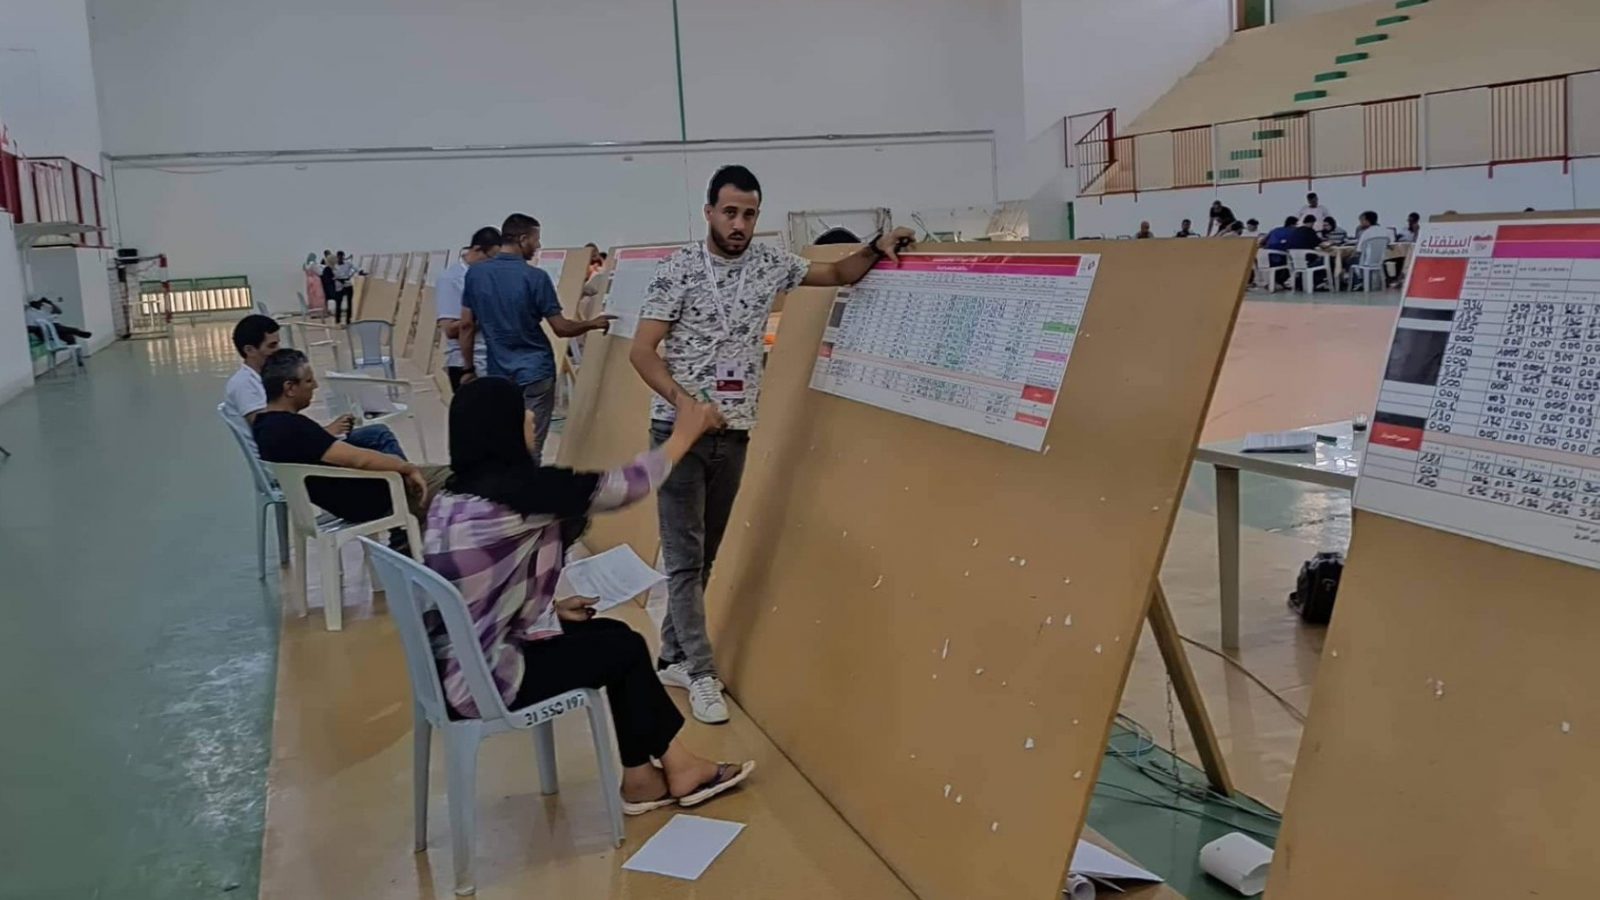 محاضر جمع النتائج للهيئات الفرعية للانتخابات داخل تونس (وثائق)